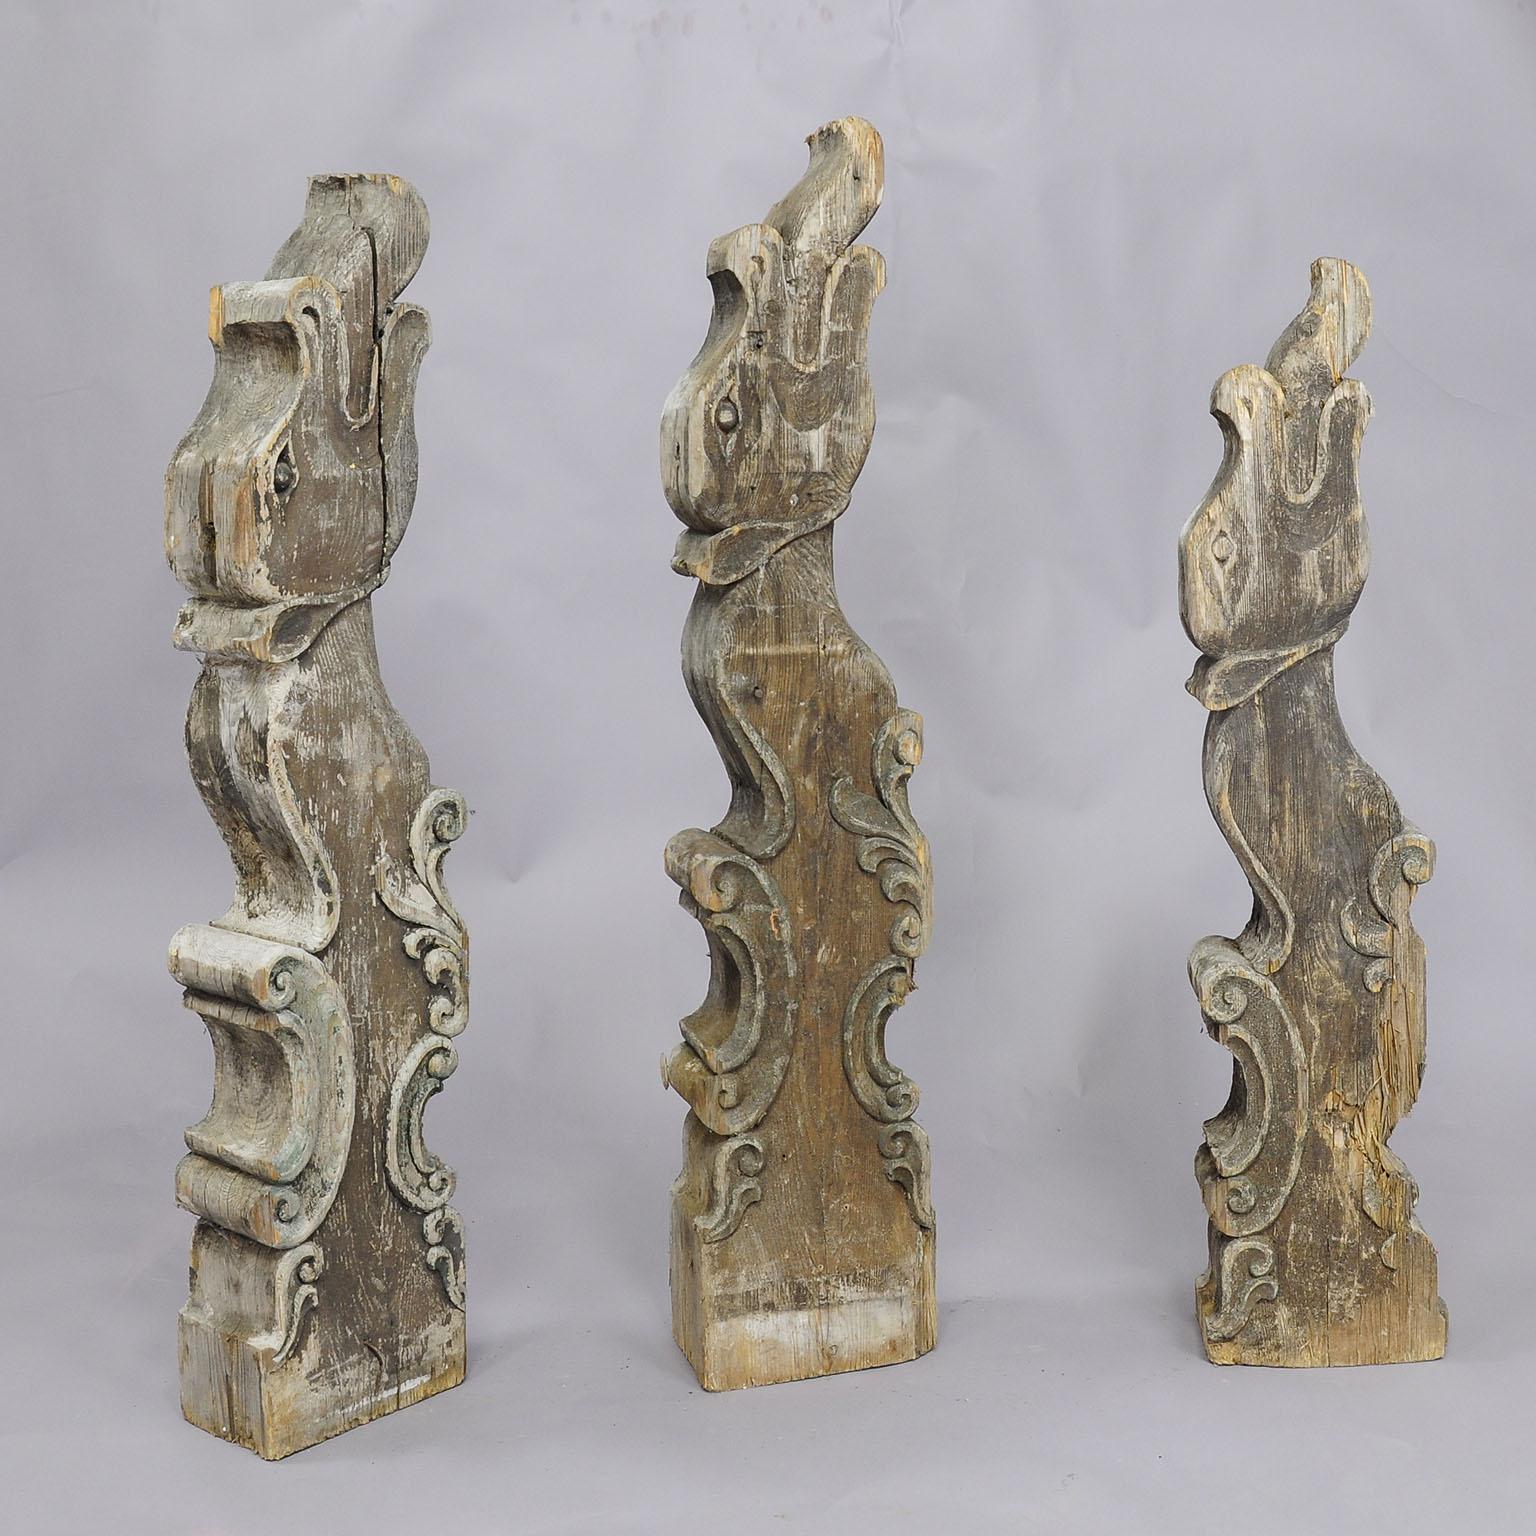 Cet ensemble de trois poutres anciennes en bois massif à tête de dragon provient d'une maison bavaroise à colombages située dans la région de Garmisch Partenkirchen, en Allemagne. Ils sont sculptés comme des dragons créatifs, la langue pendante.